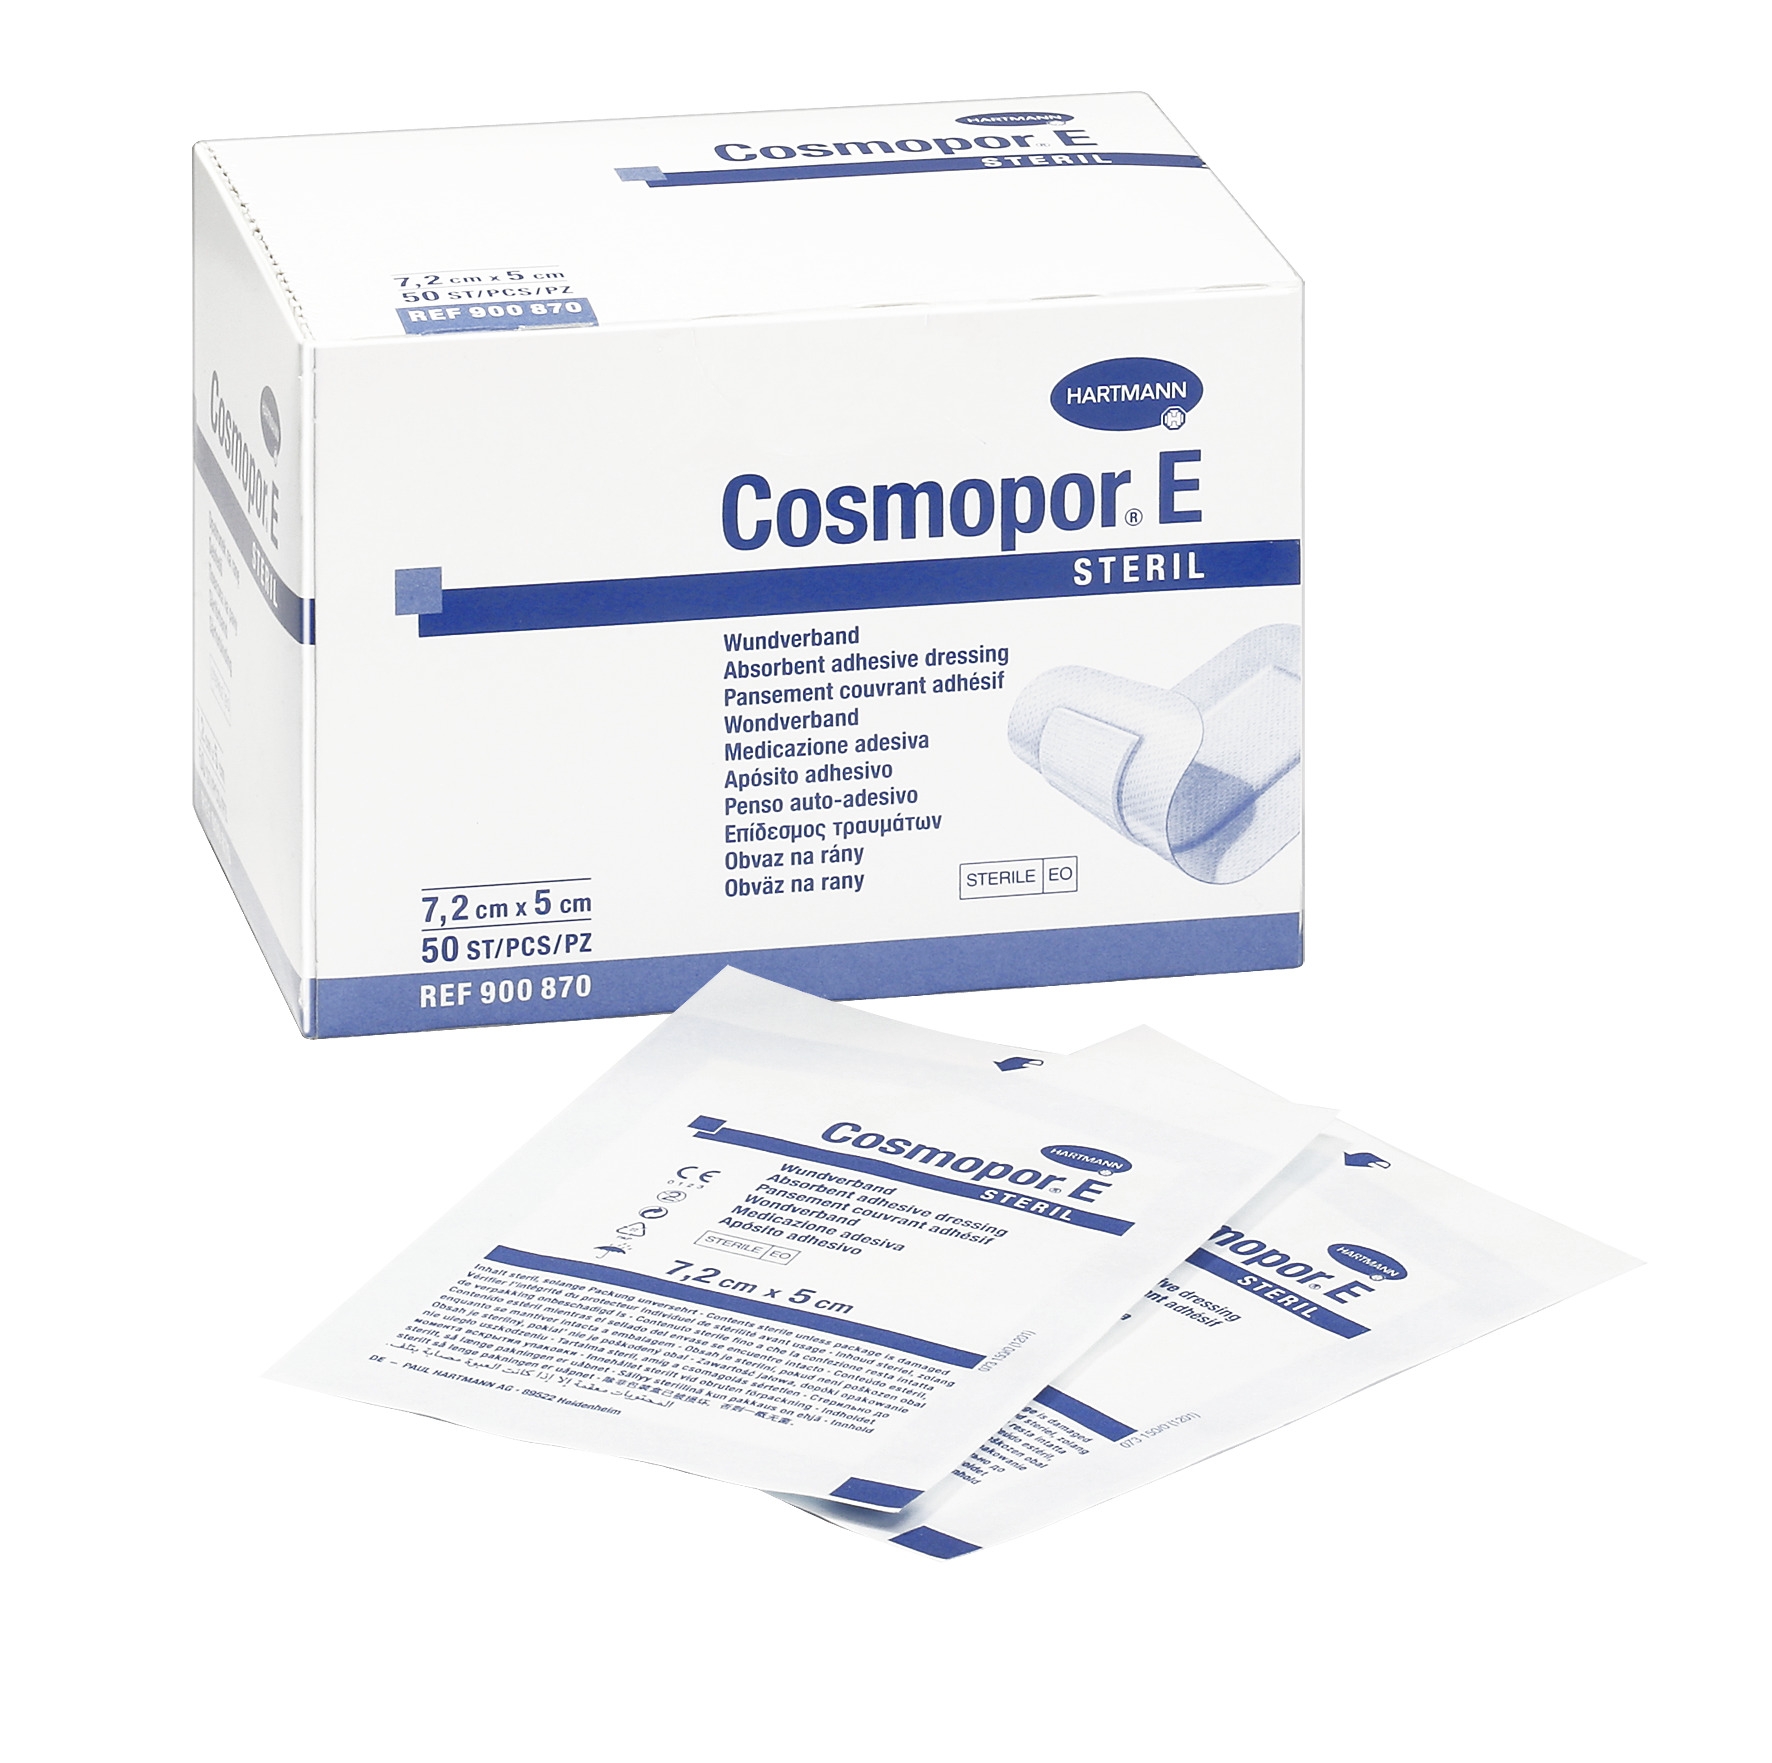 Cosmopor E steril, 50 Stück 7,2 x 5 cm